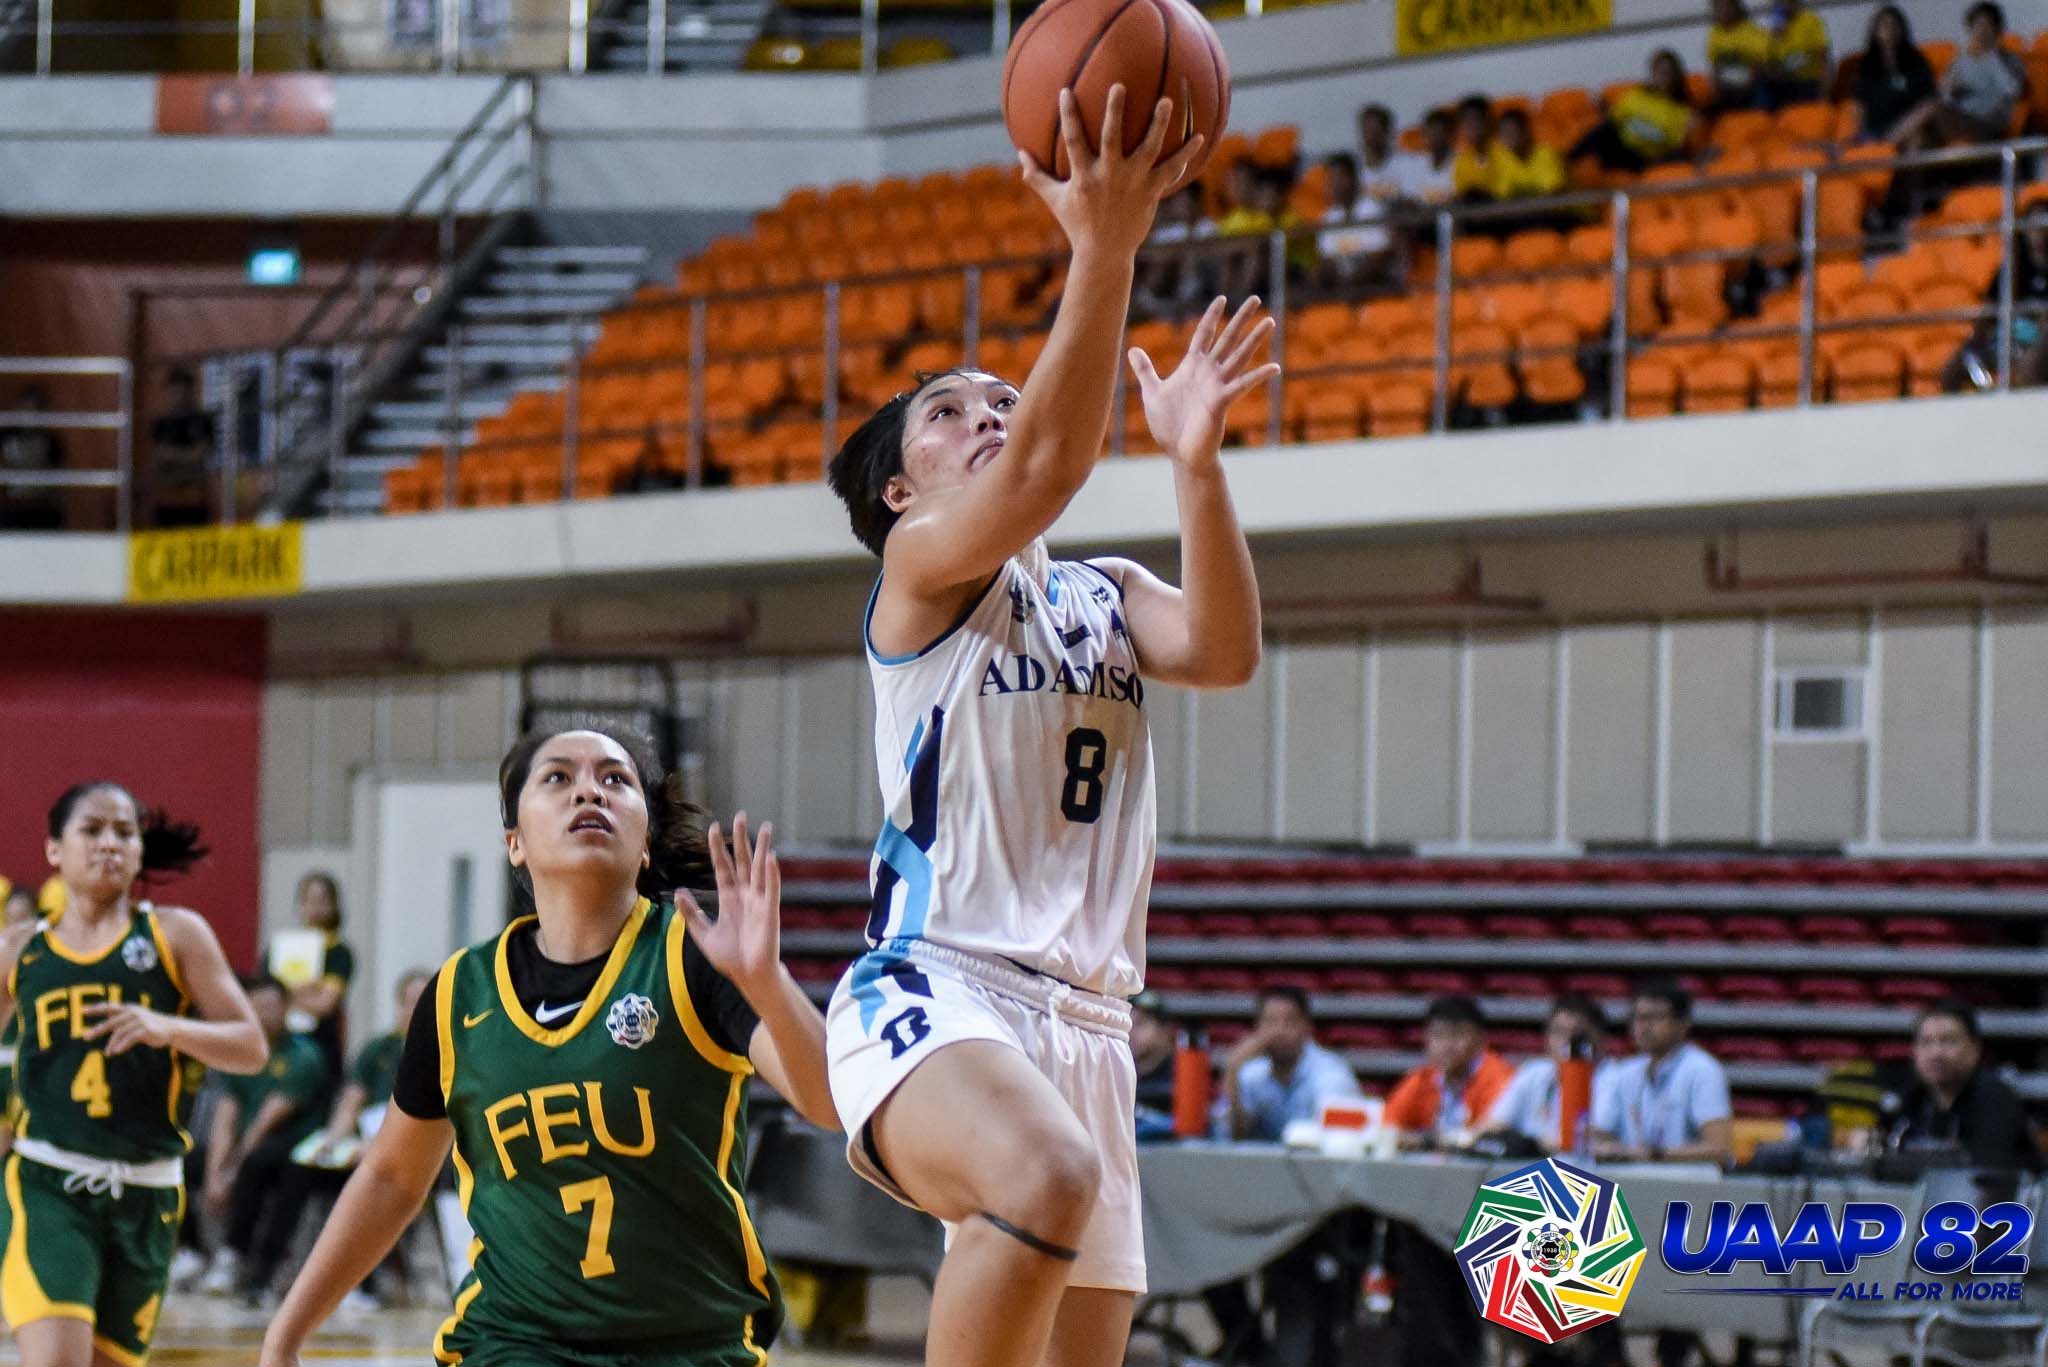 UAAP82-WBB-1ST-PHOTO-ADU-NATHALIA-PRADO Clare Castro hopes FEU overcomes 'problems' to extend her career Basketball FEU News UAAP  - philippine sports news